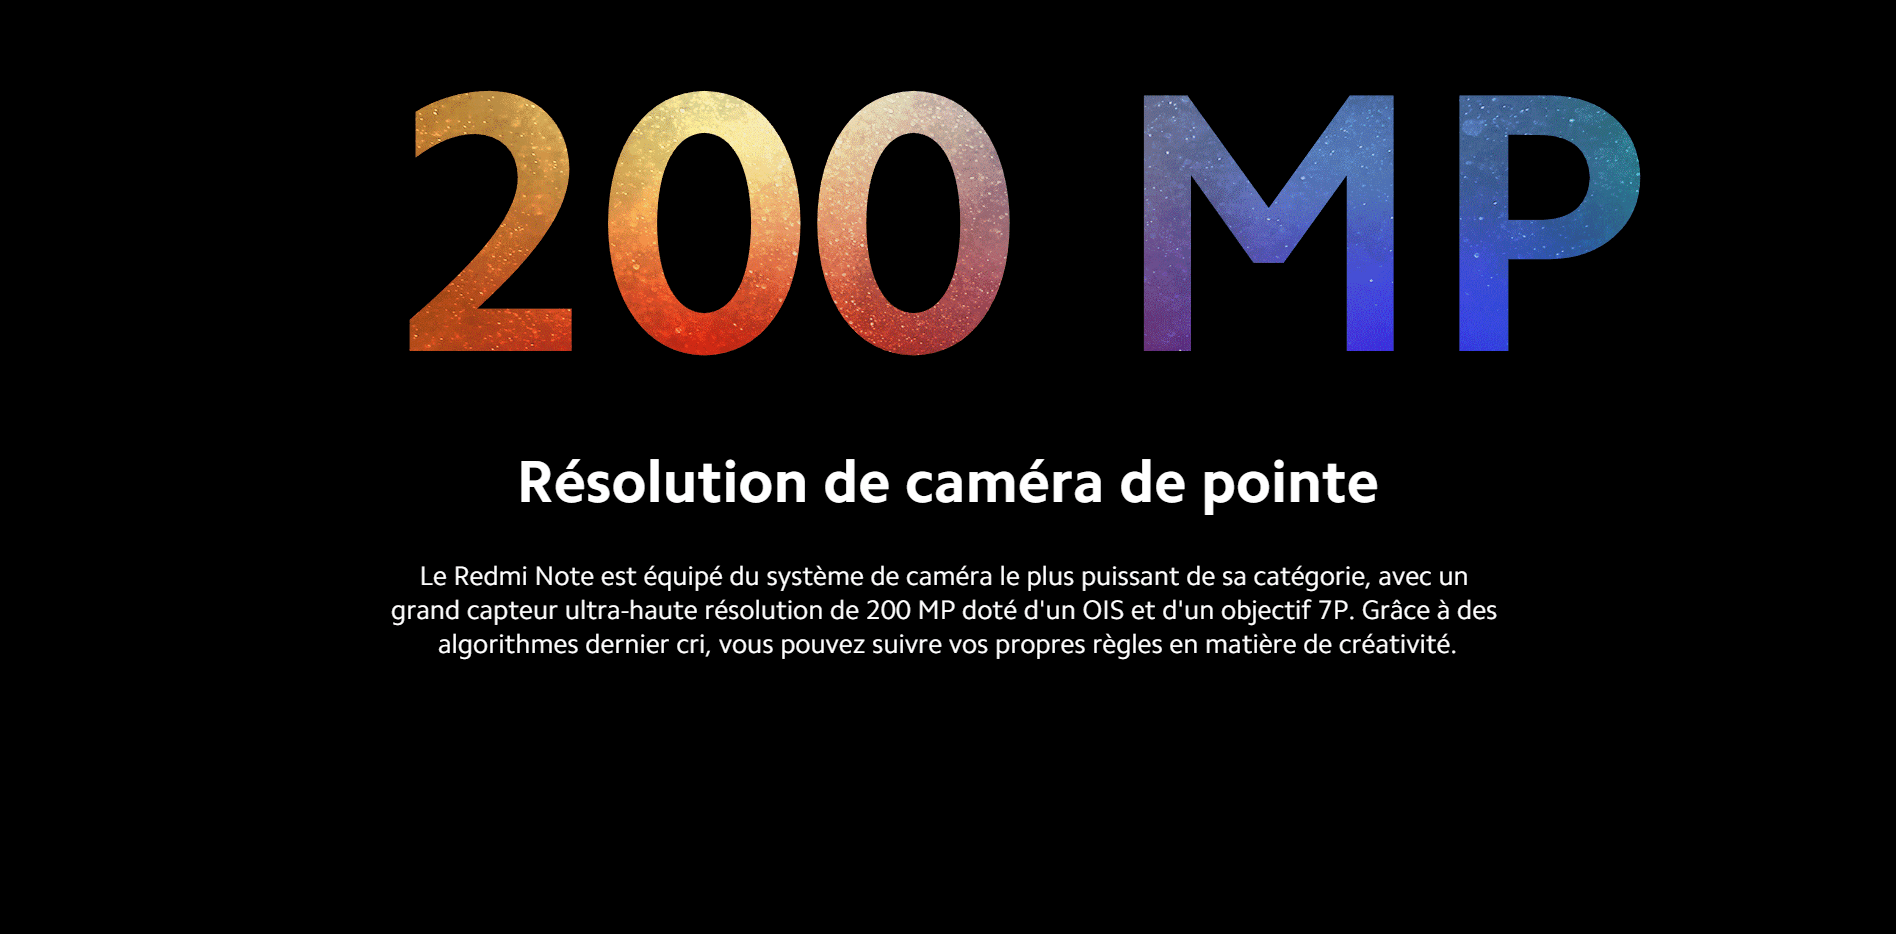 Résolution de caméra de pointe 200 MP